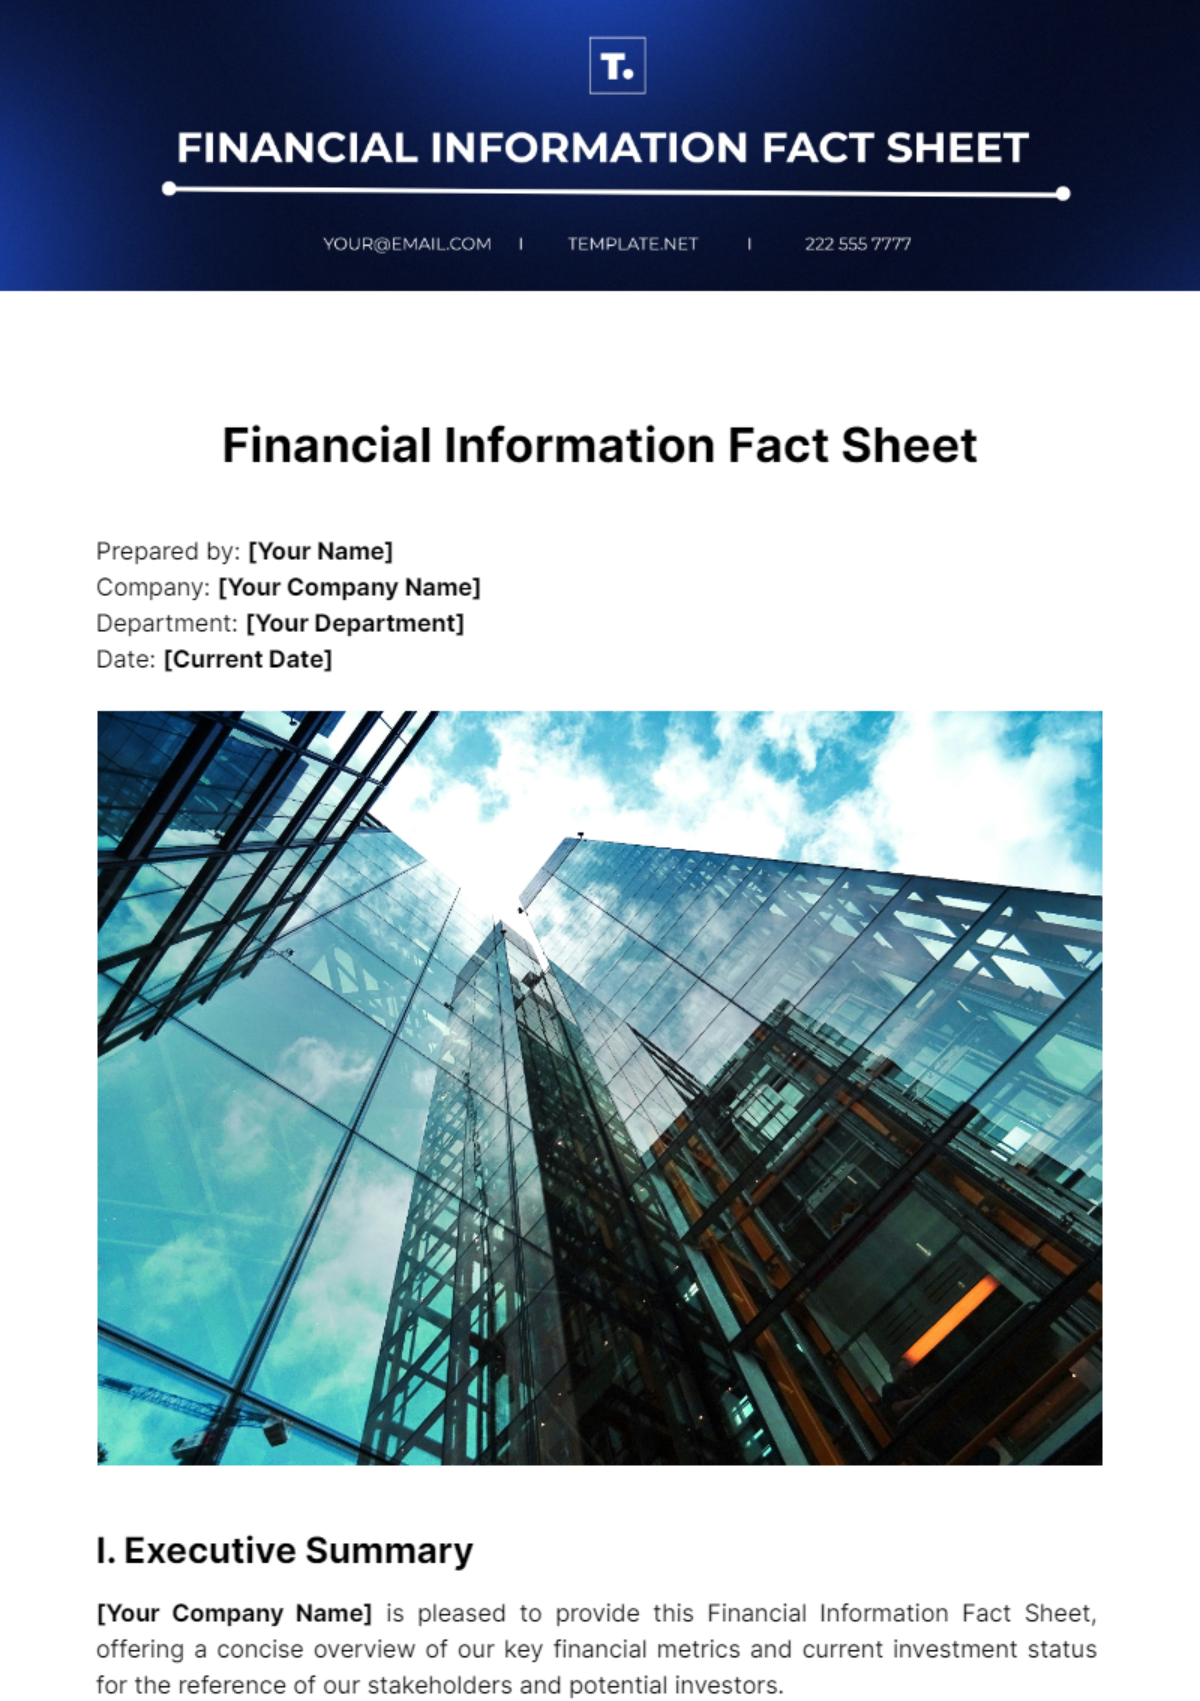 Financial Information Fact Sheet Template